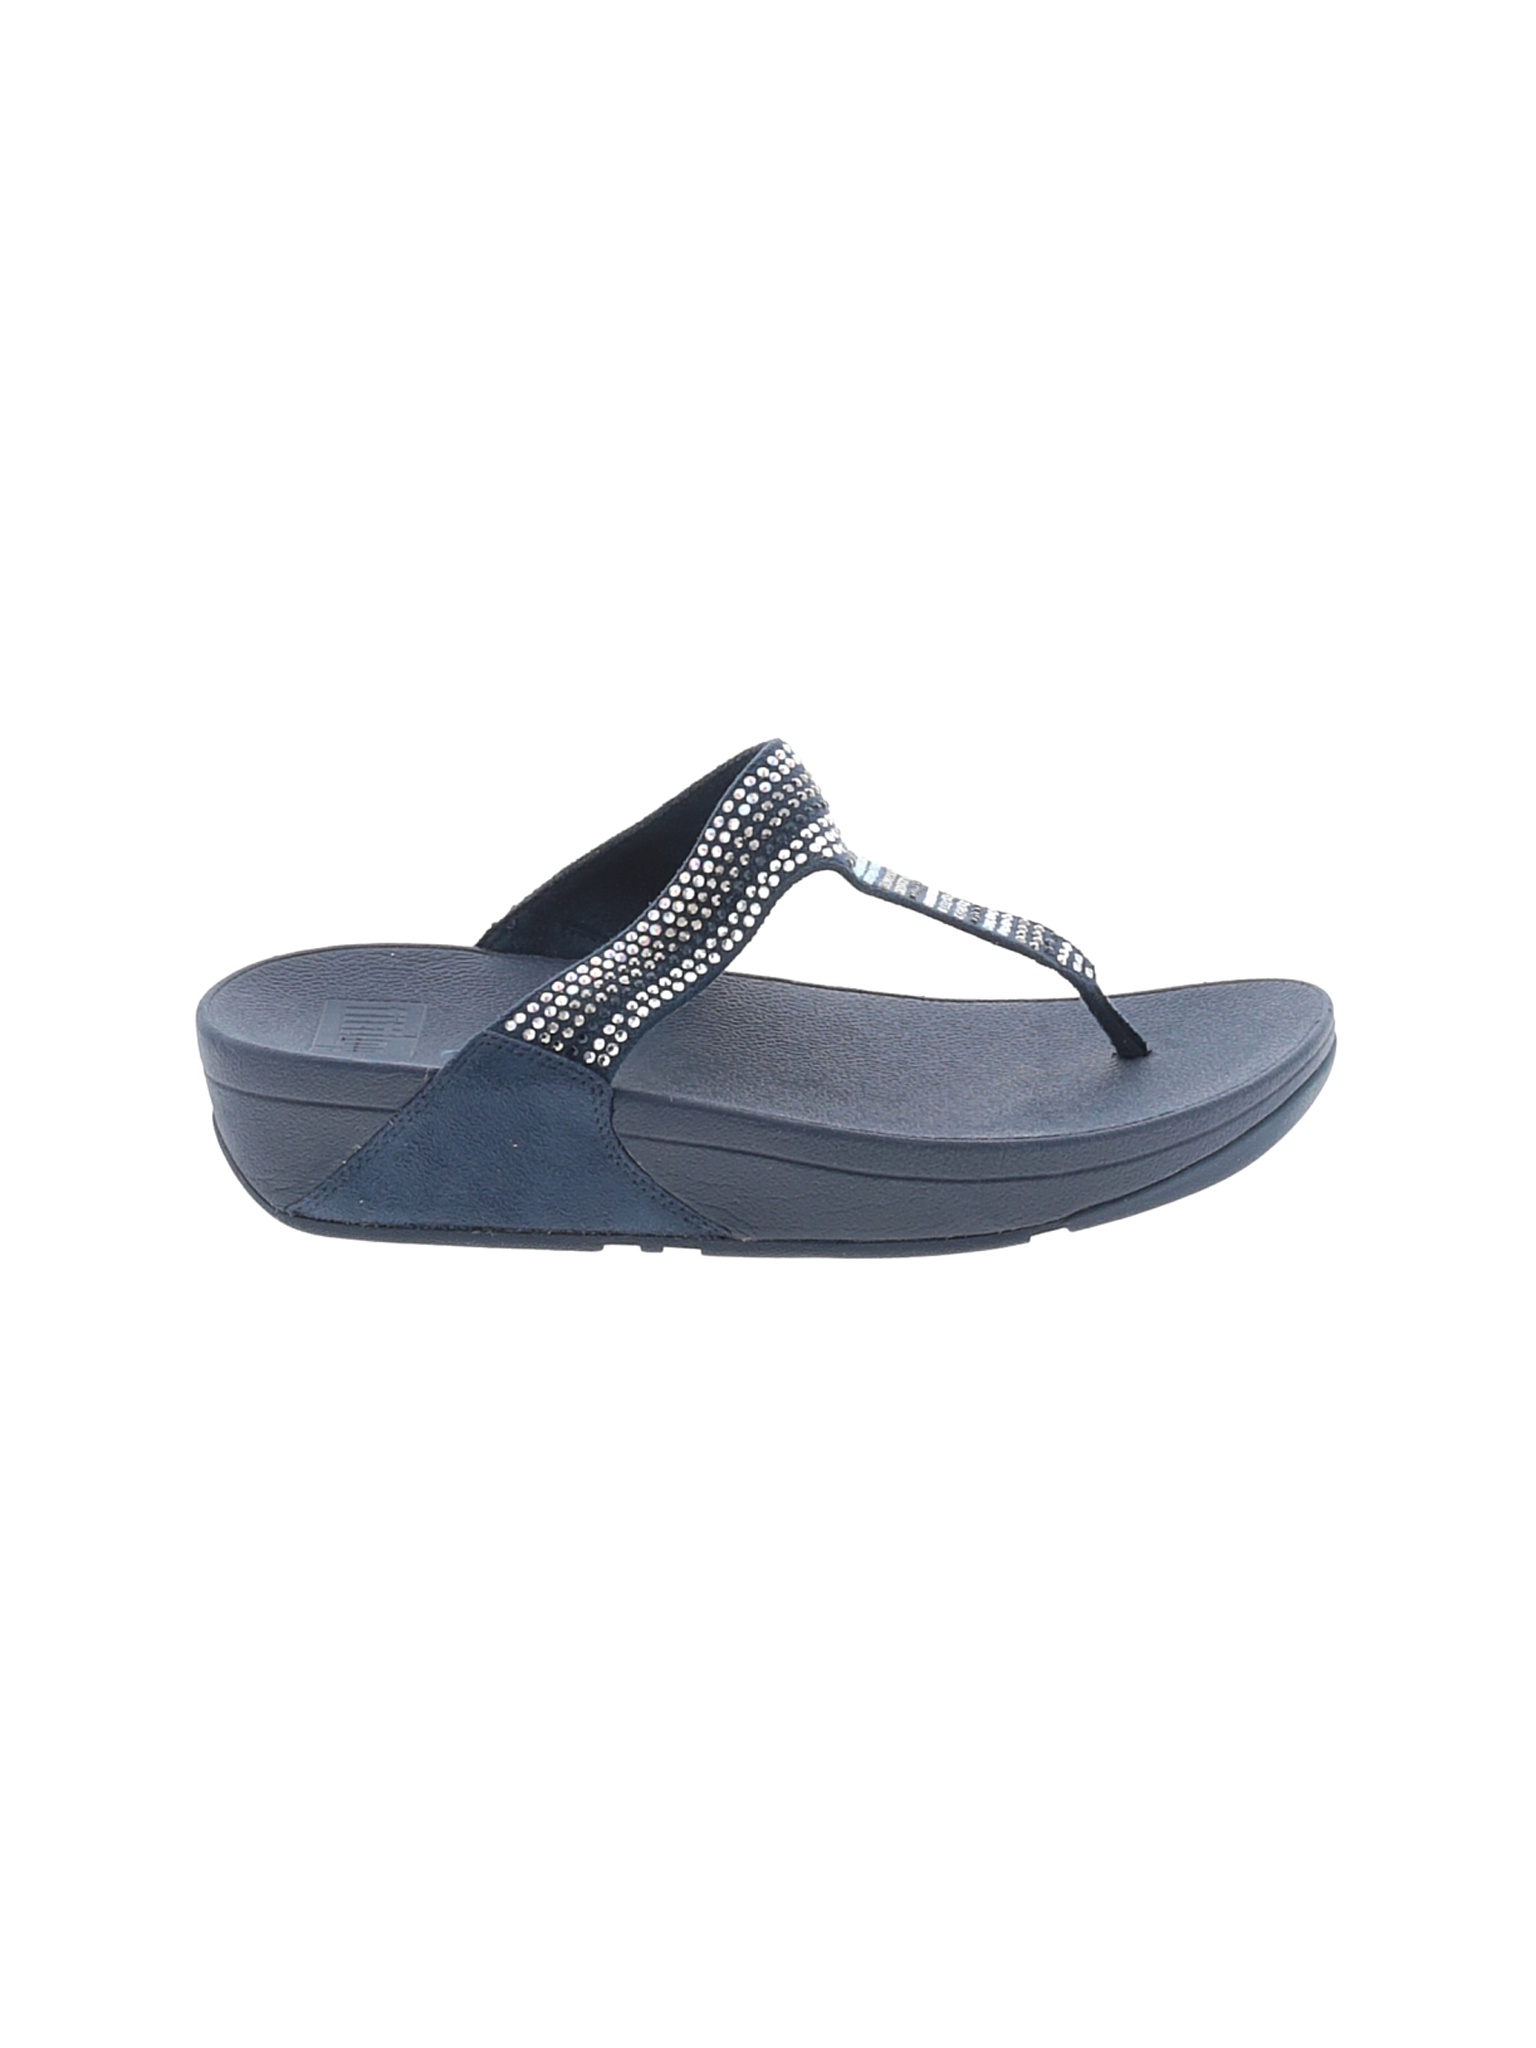 FitFlop Women Blue Sandals US 8 | eBay